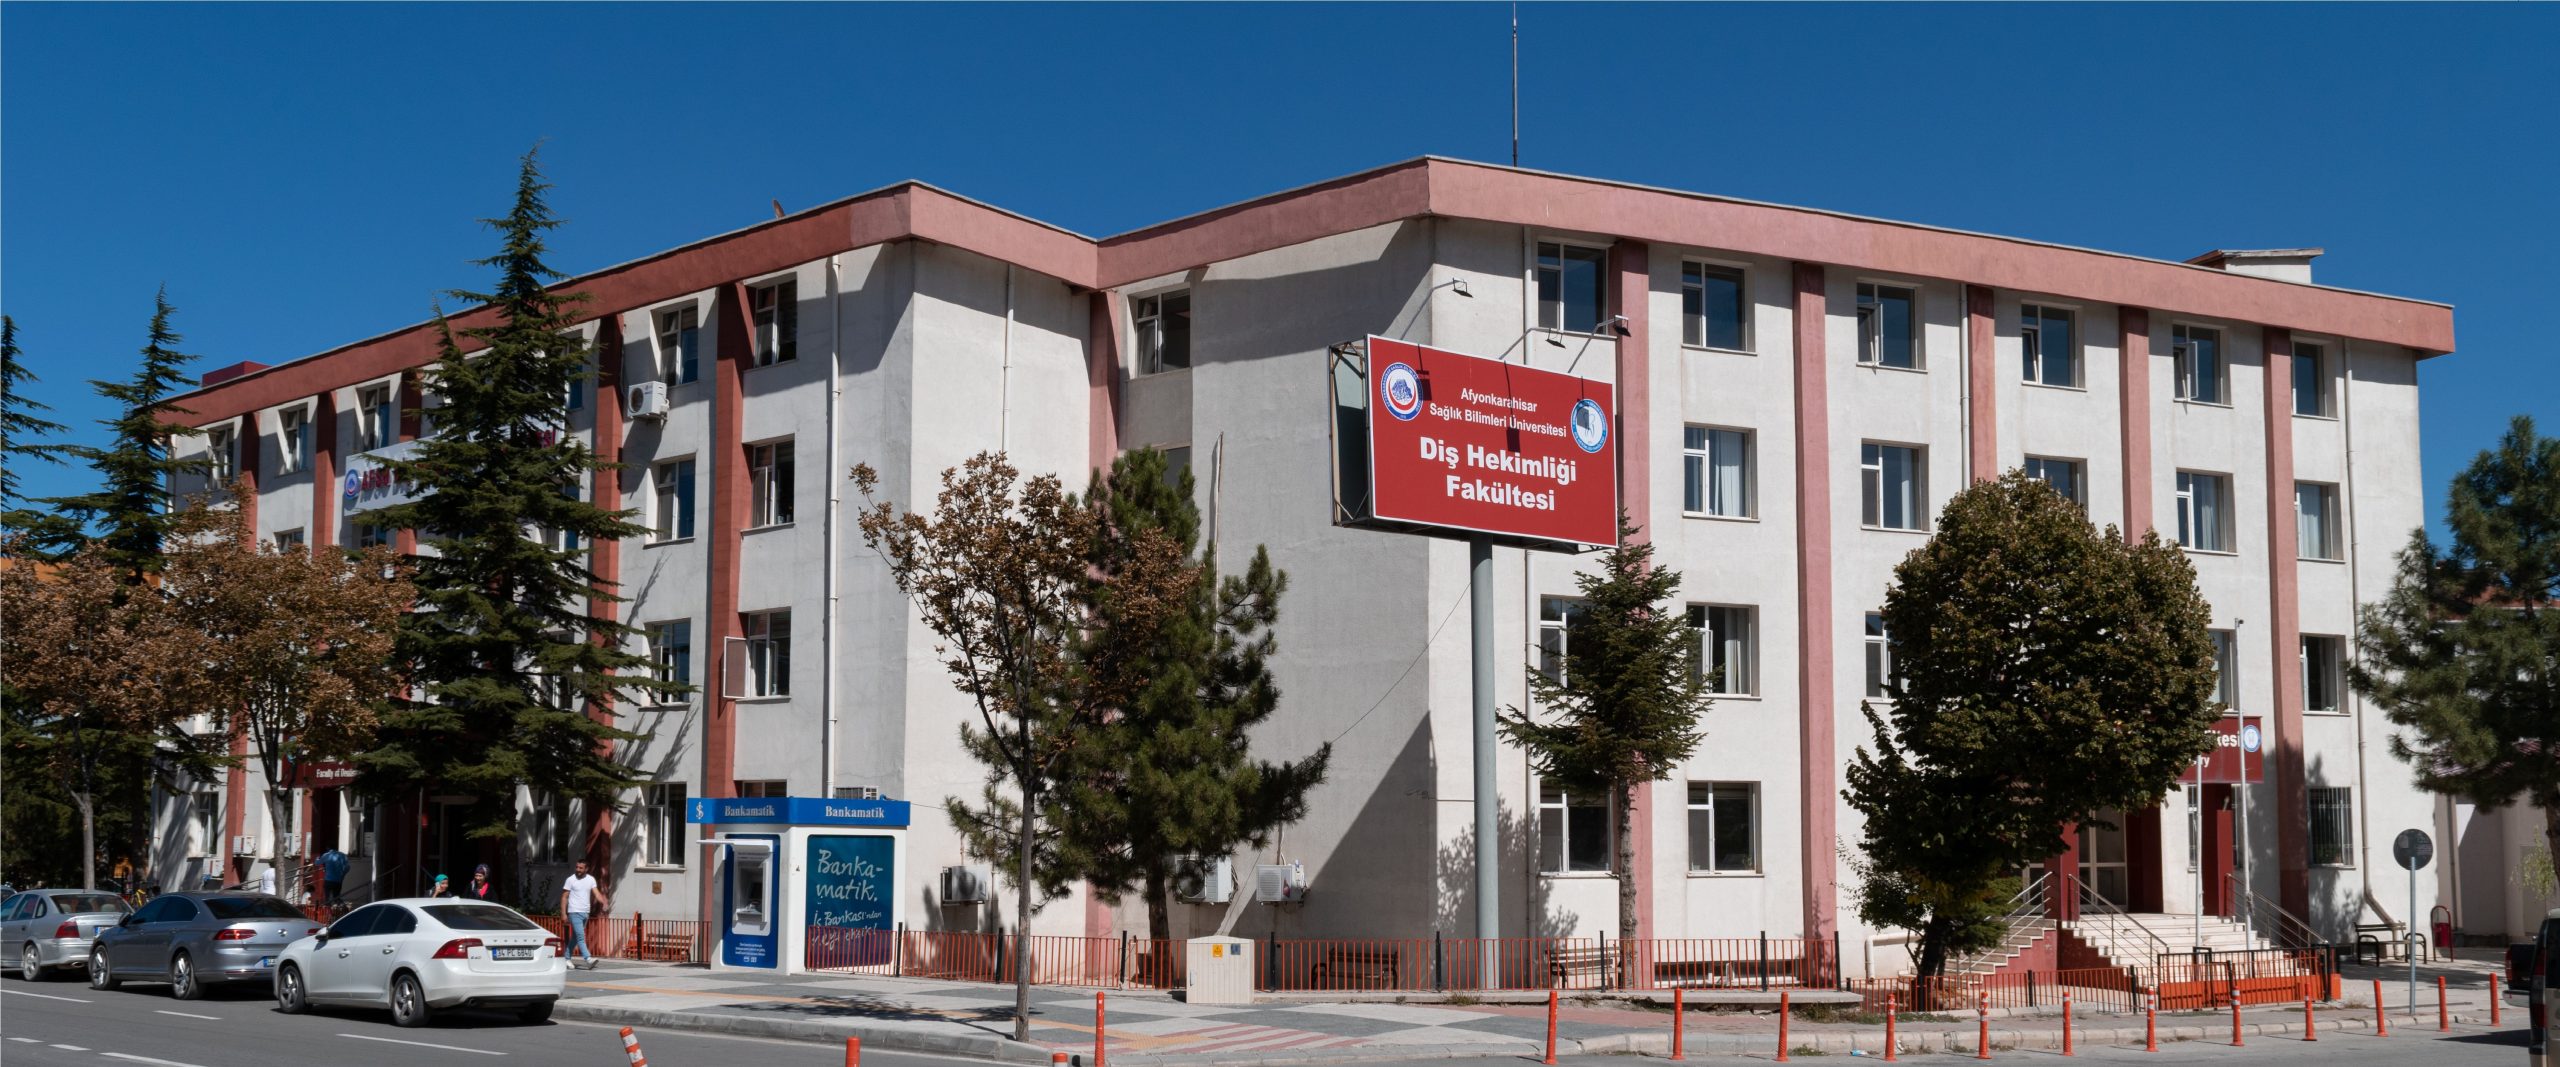 afyonsaglik universitesi find and study 3 - Afyonkarahisar Sağlık Bilimleri Üniversitesi